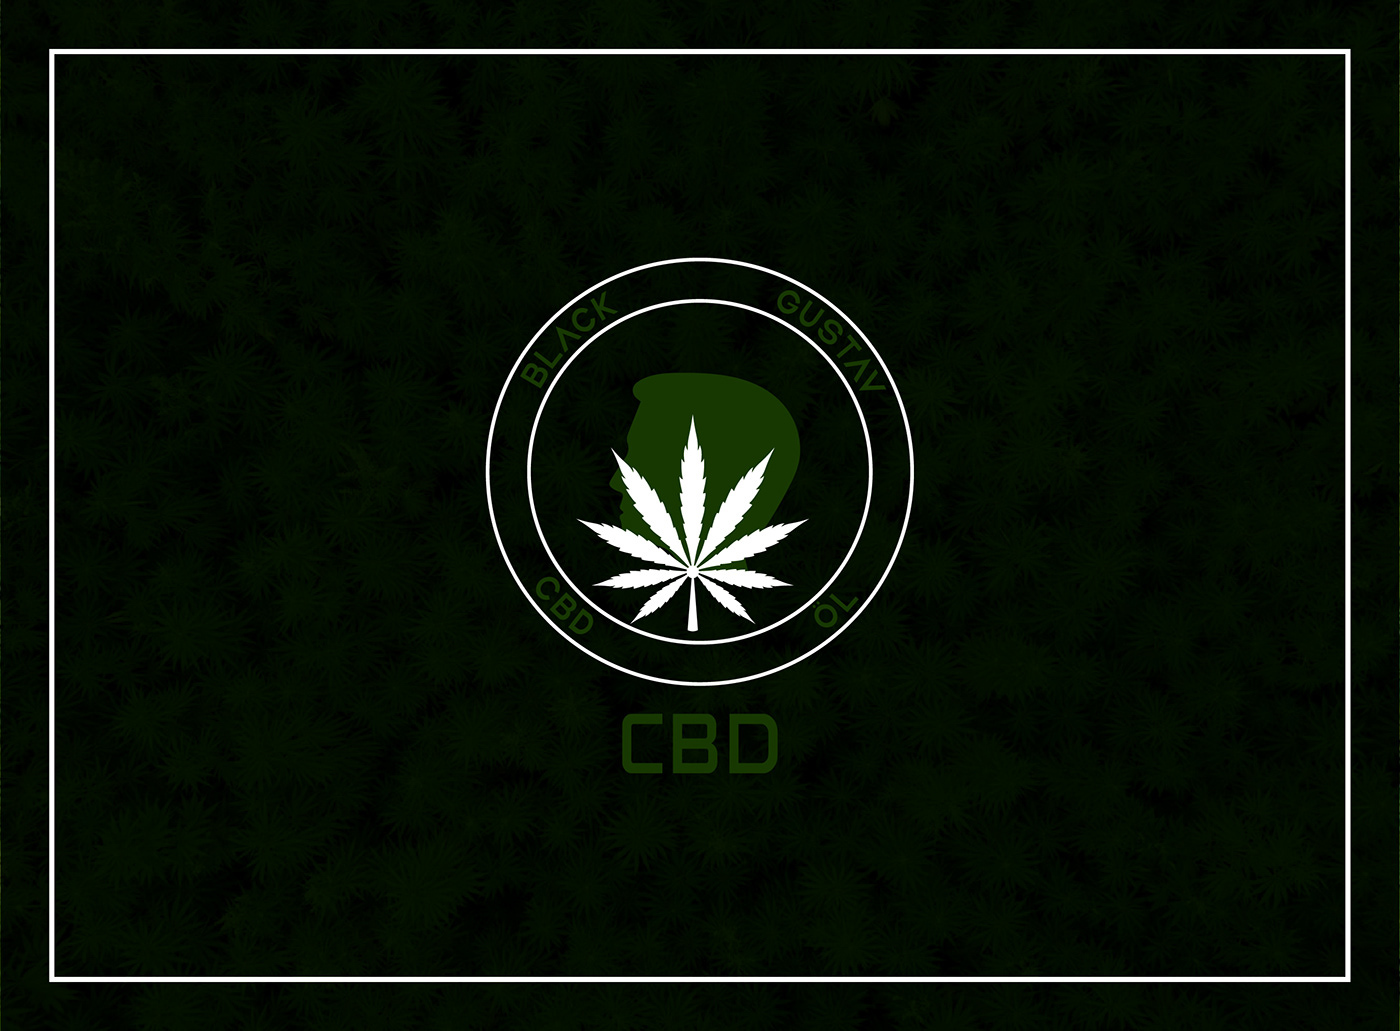 logo logos Logo Design CBD cannabis Health doctor agriculture Food  environment